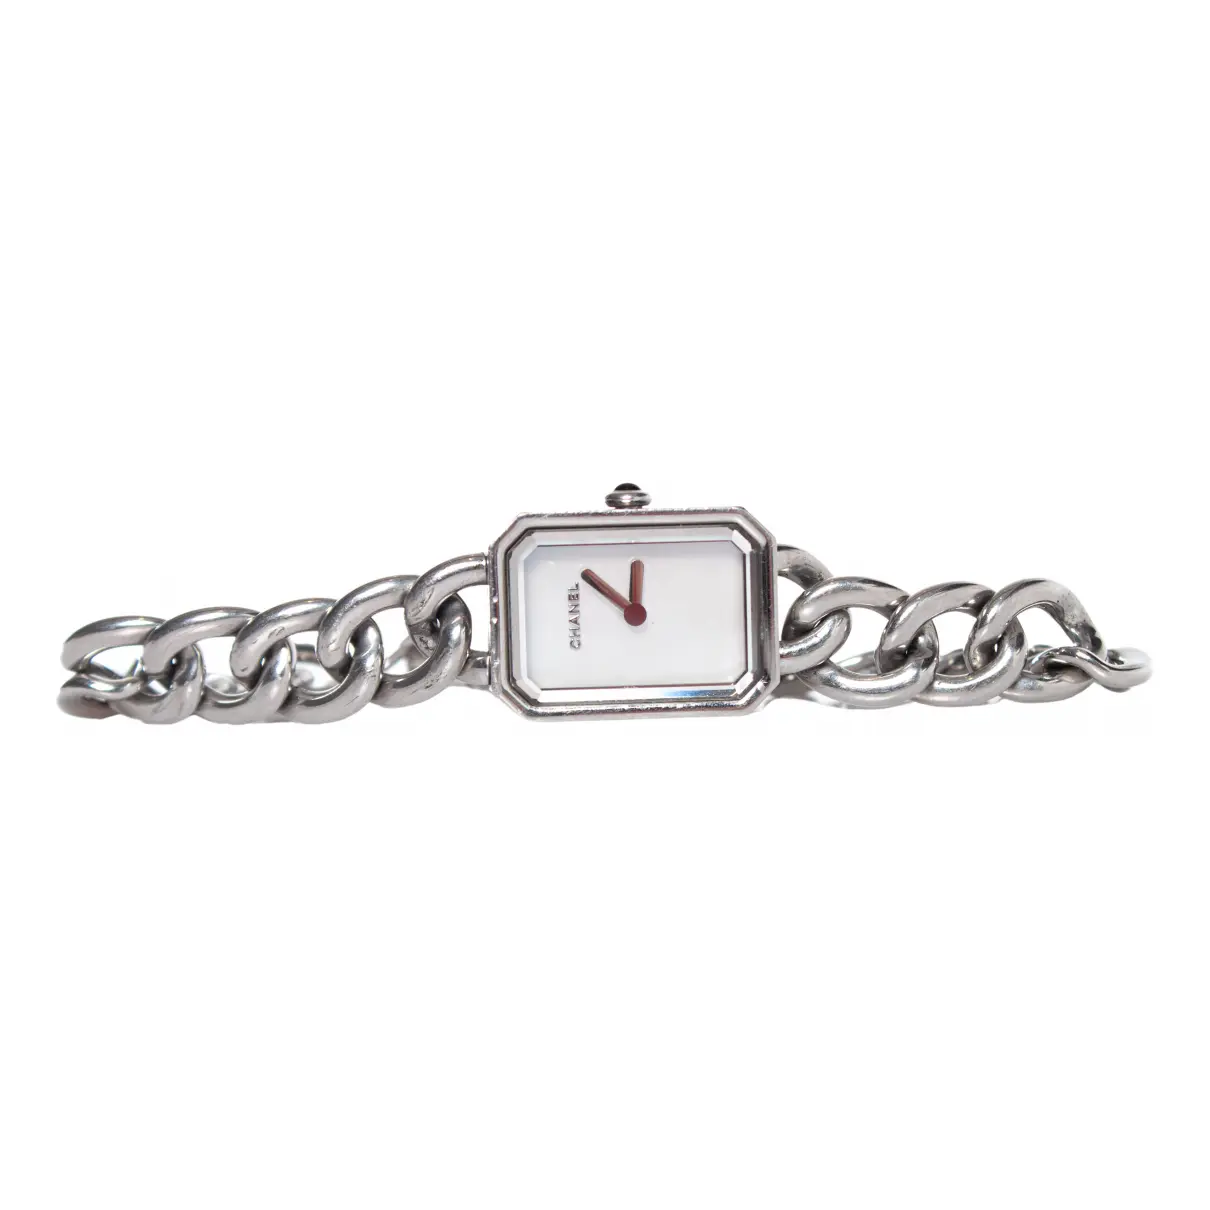 Première Chaîne silver watch Chanel